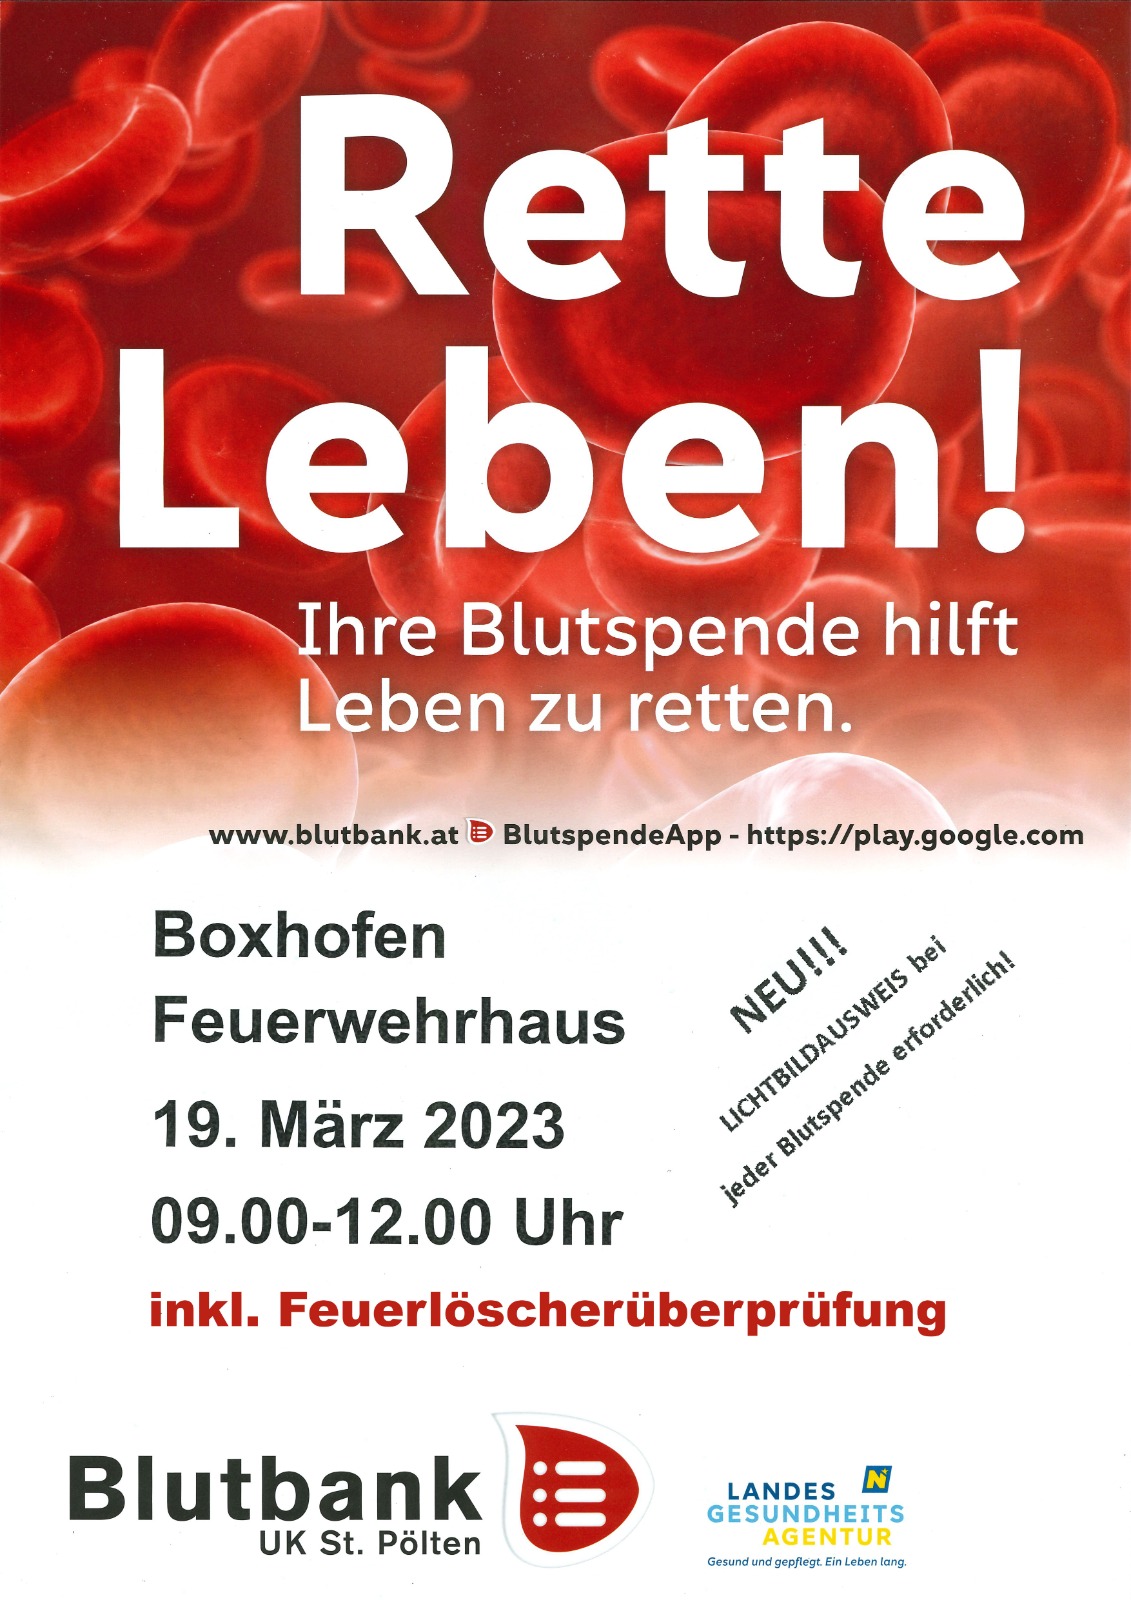 19.03.2023 Blutspenden mit Feuerlöscherüberprüfung in Boxhofen